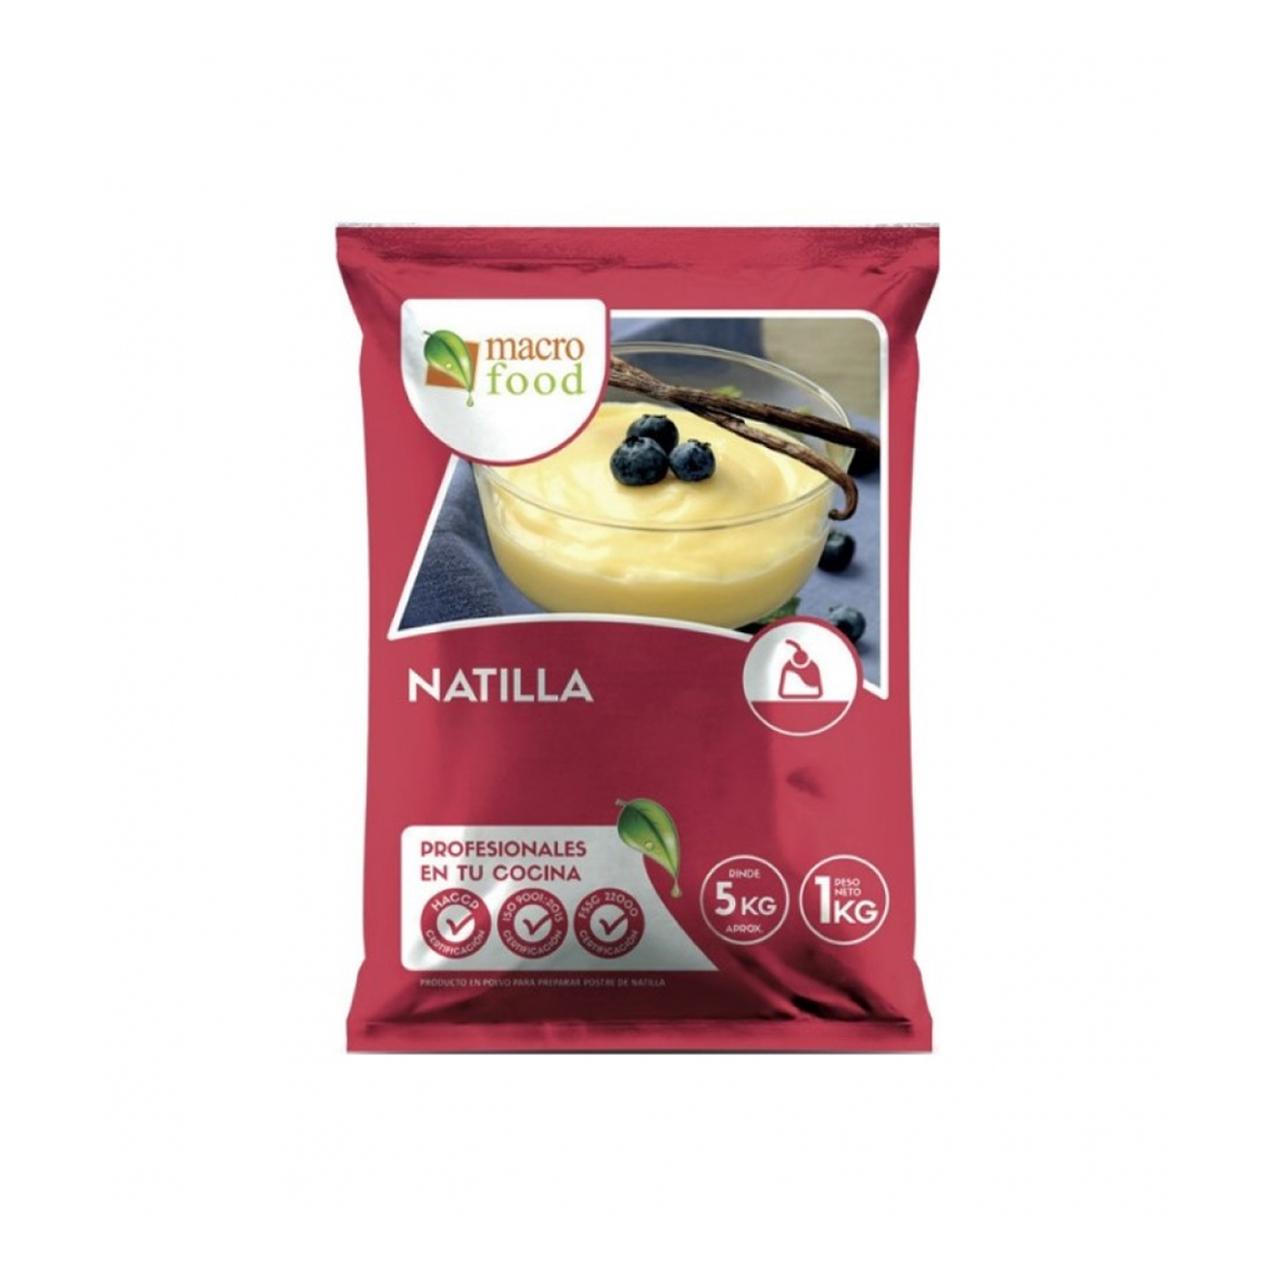 Natilla sabor manjar con coco rallado Macro Food (1 kg / 2.2 lb)